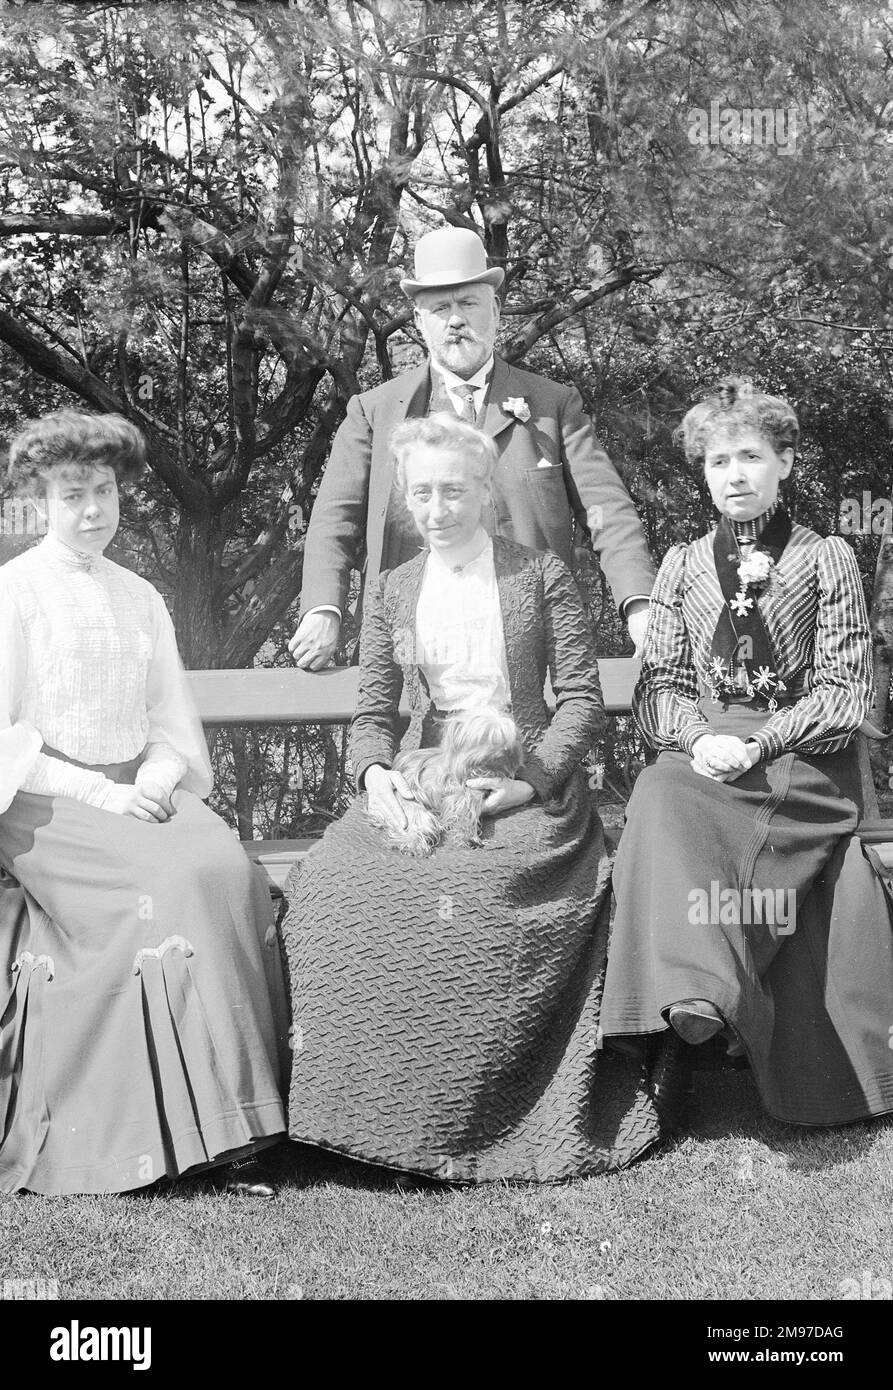 Grupo de jardín eduardiano en Strathclyde, Offerton Lane, Stockport, hogar de William John Battersby (de pie) y su hija menor Edith. Las dos damas son la señorita Quiggin y la señorita Corlett, que eran maestras de escuelas locales Foto de stock